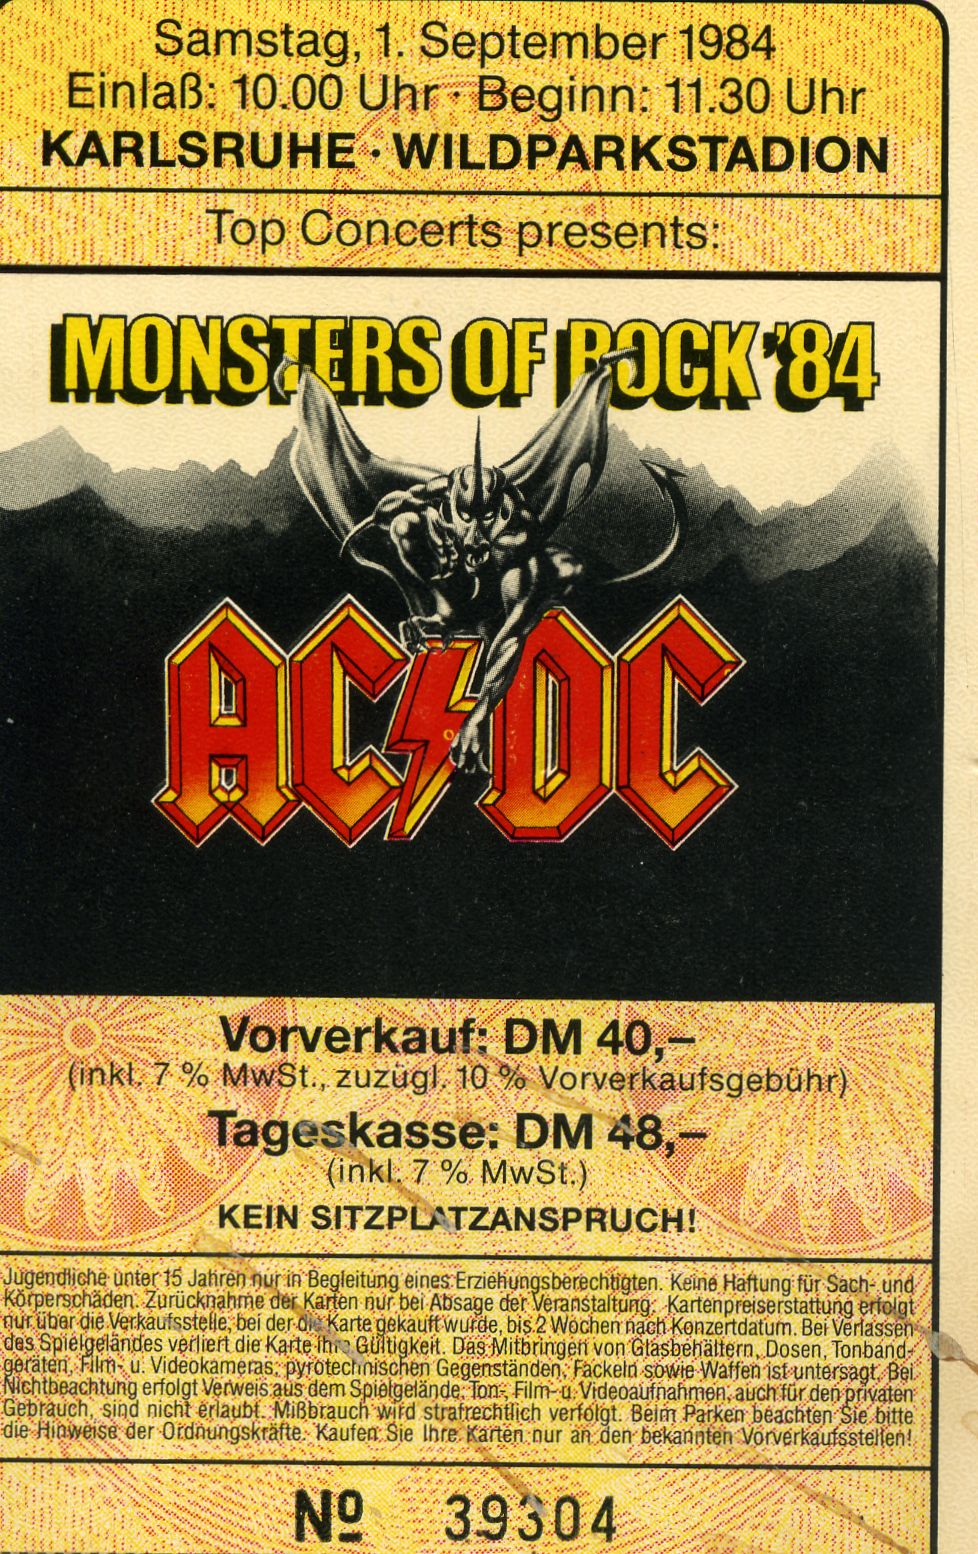 Monsters of Rock Karlsruhe 1984 ticket.jpg